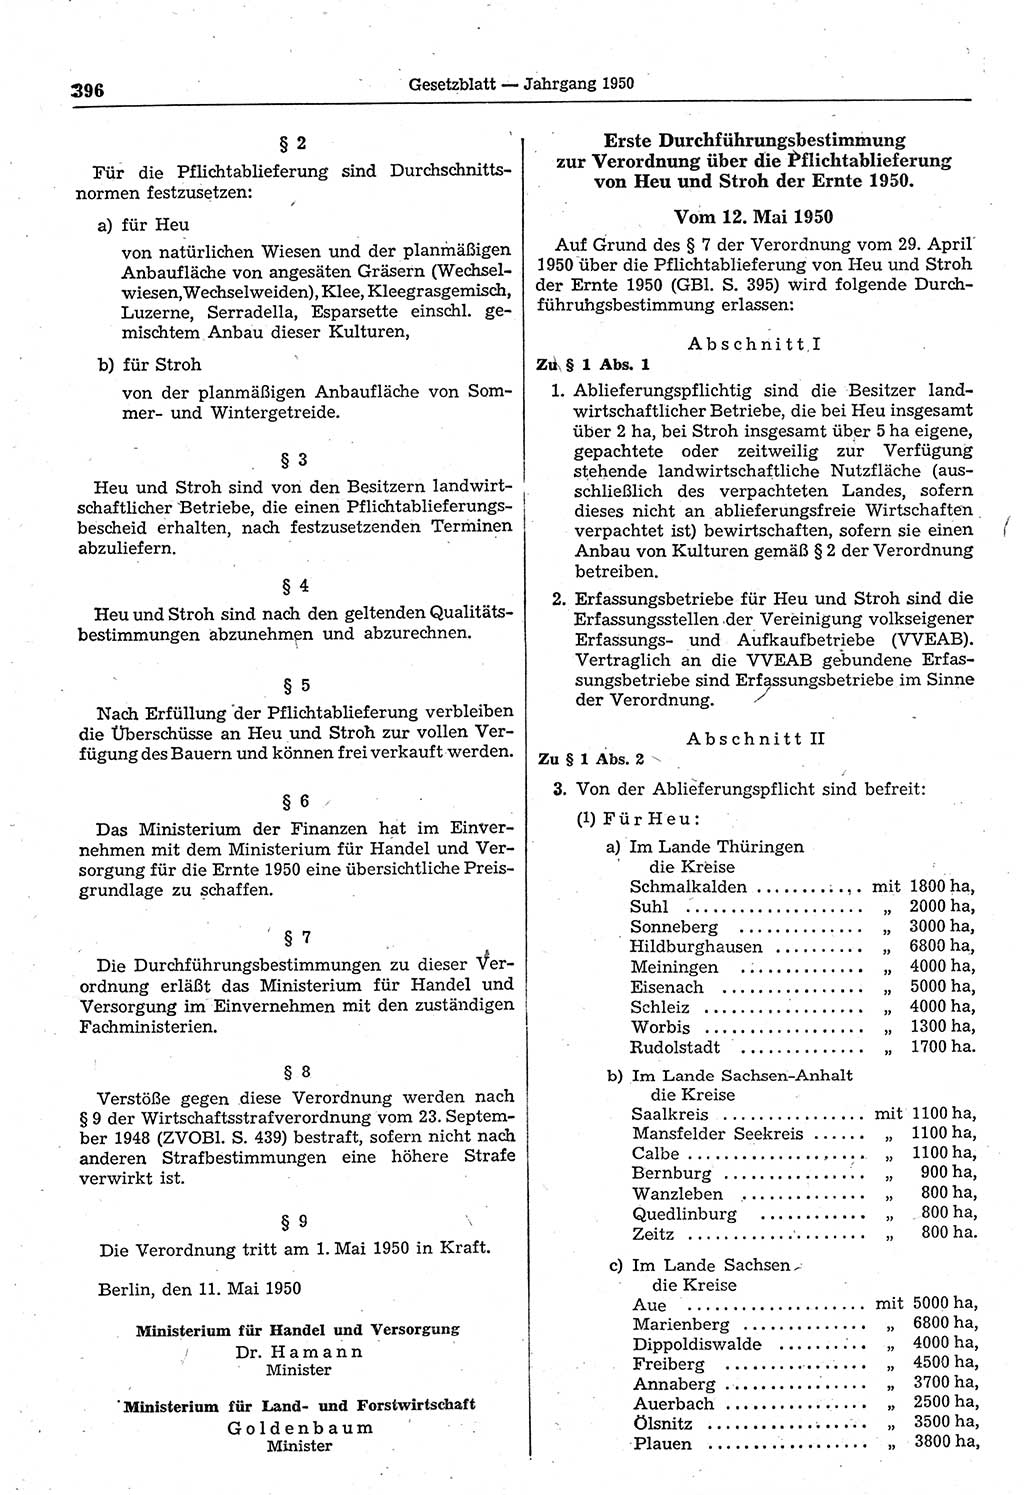 Gesetzblatt (GBl.) der Deutschen Demokratischen Republik (DDR) 1950, Seite 396 (GBl. DDR 1950, S. 396)